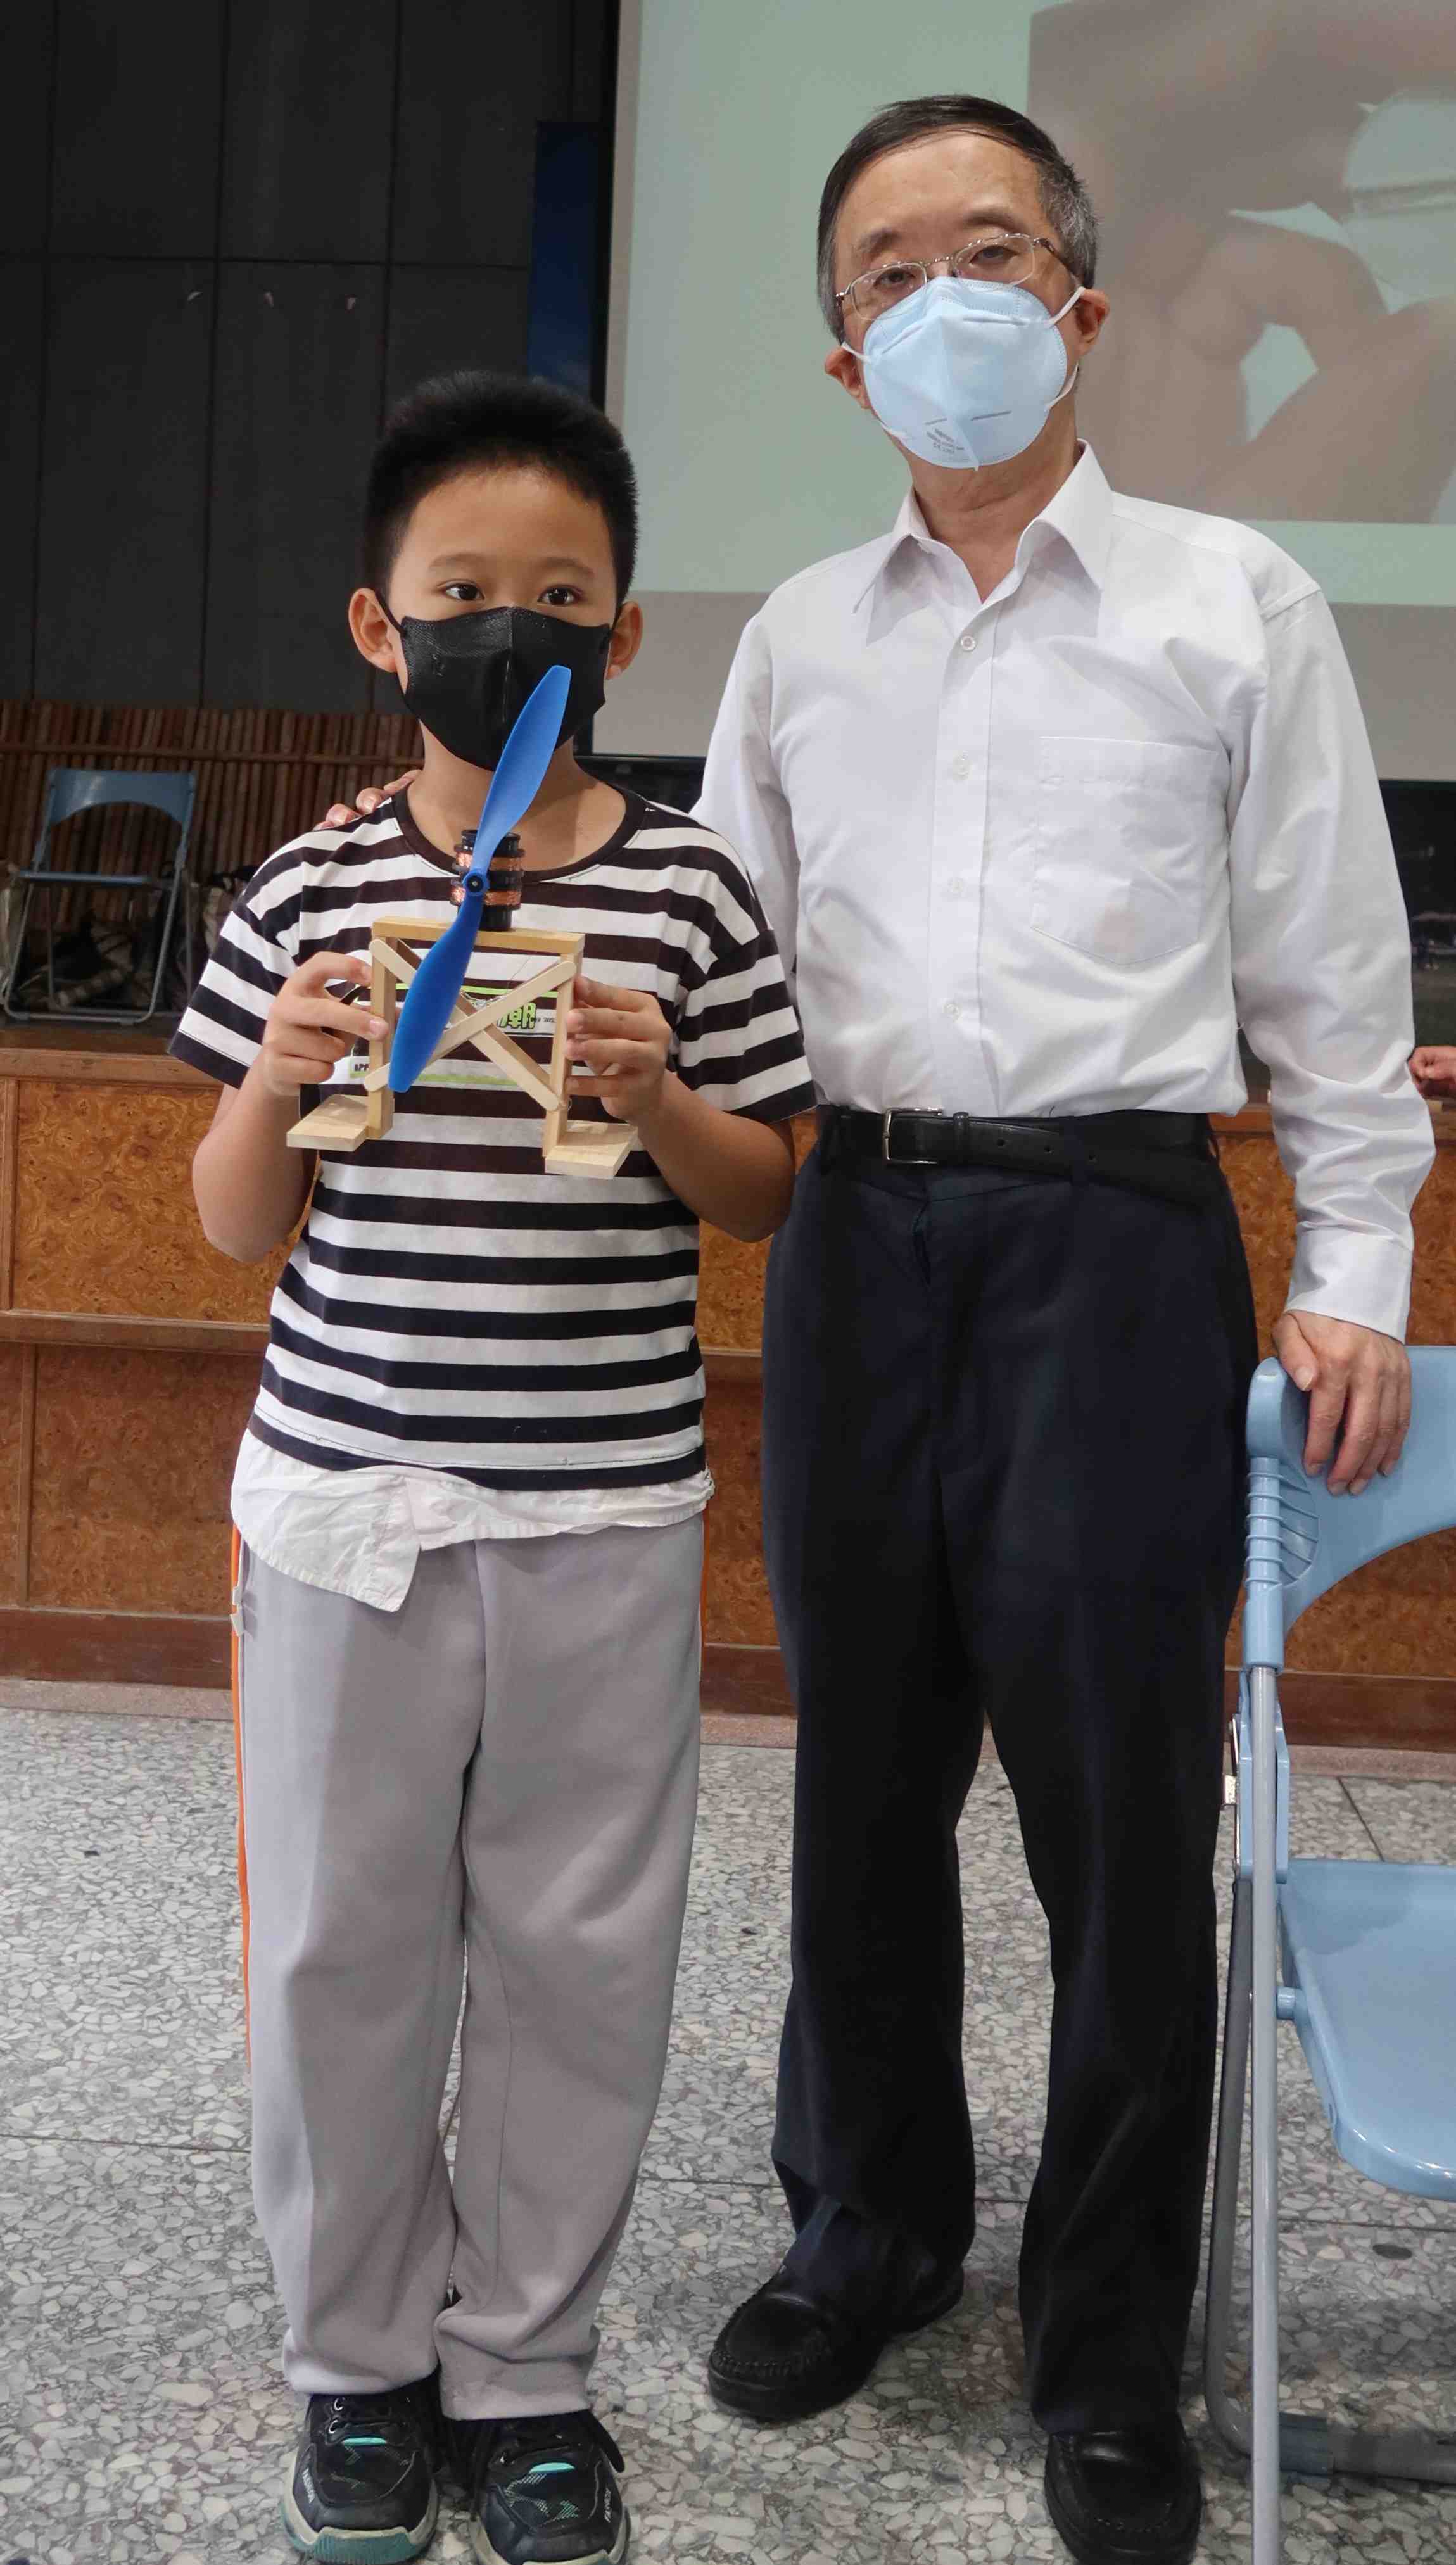 國小學童手持自製的風力發電機與周祥順老師合影.